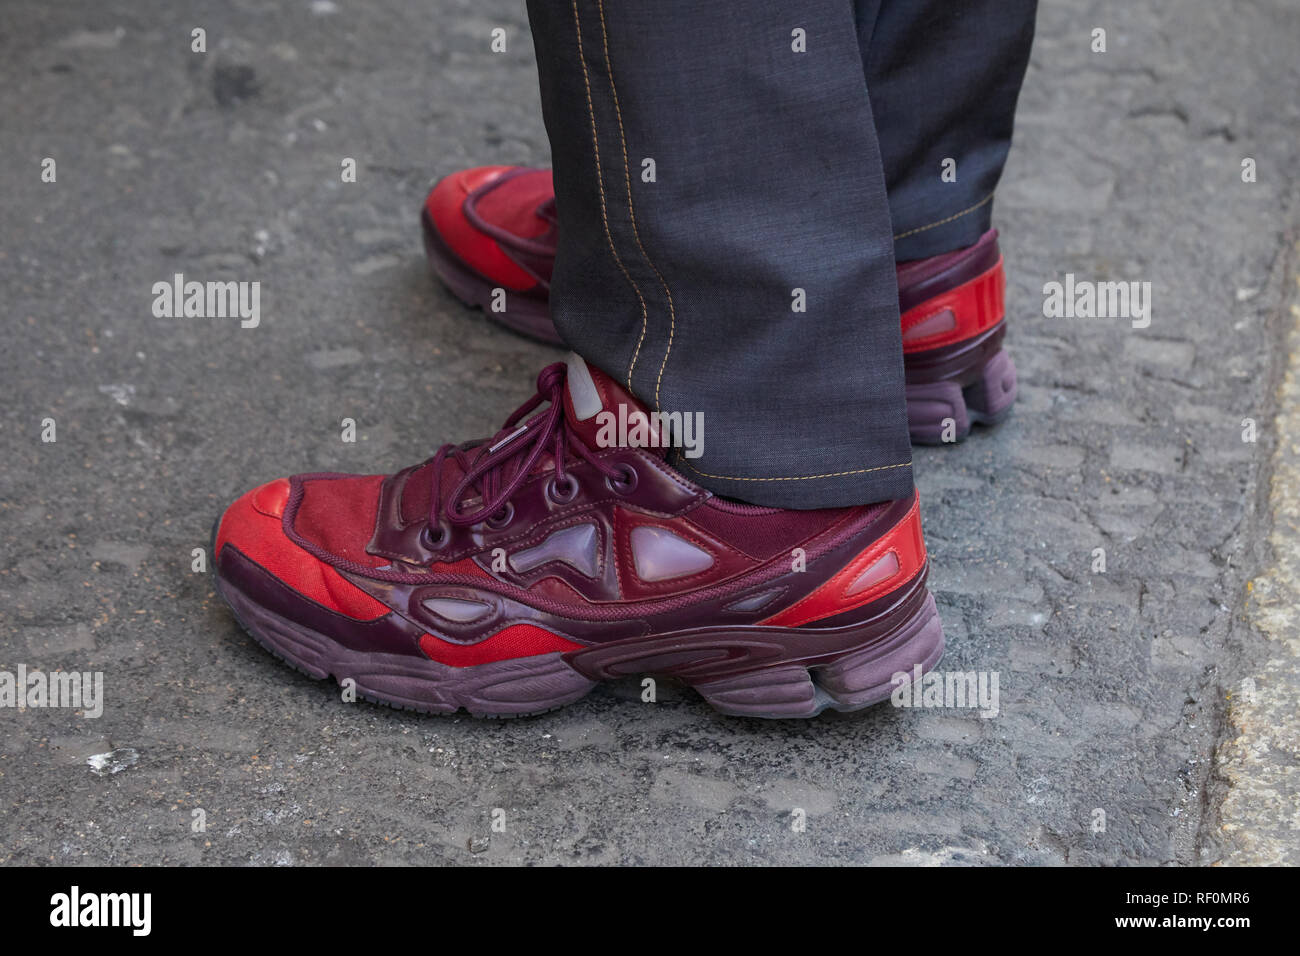 Milán, Italia - 13 de enero de hombre con adidas rojo Raf Simons zapatos antes de John Richmond Show, la Semana de la moda de Milán style Fotografía